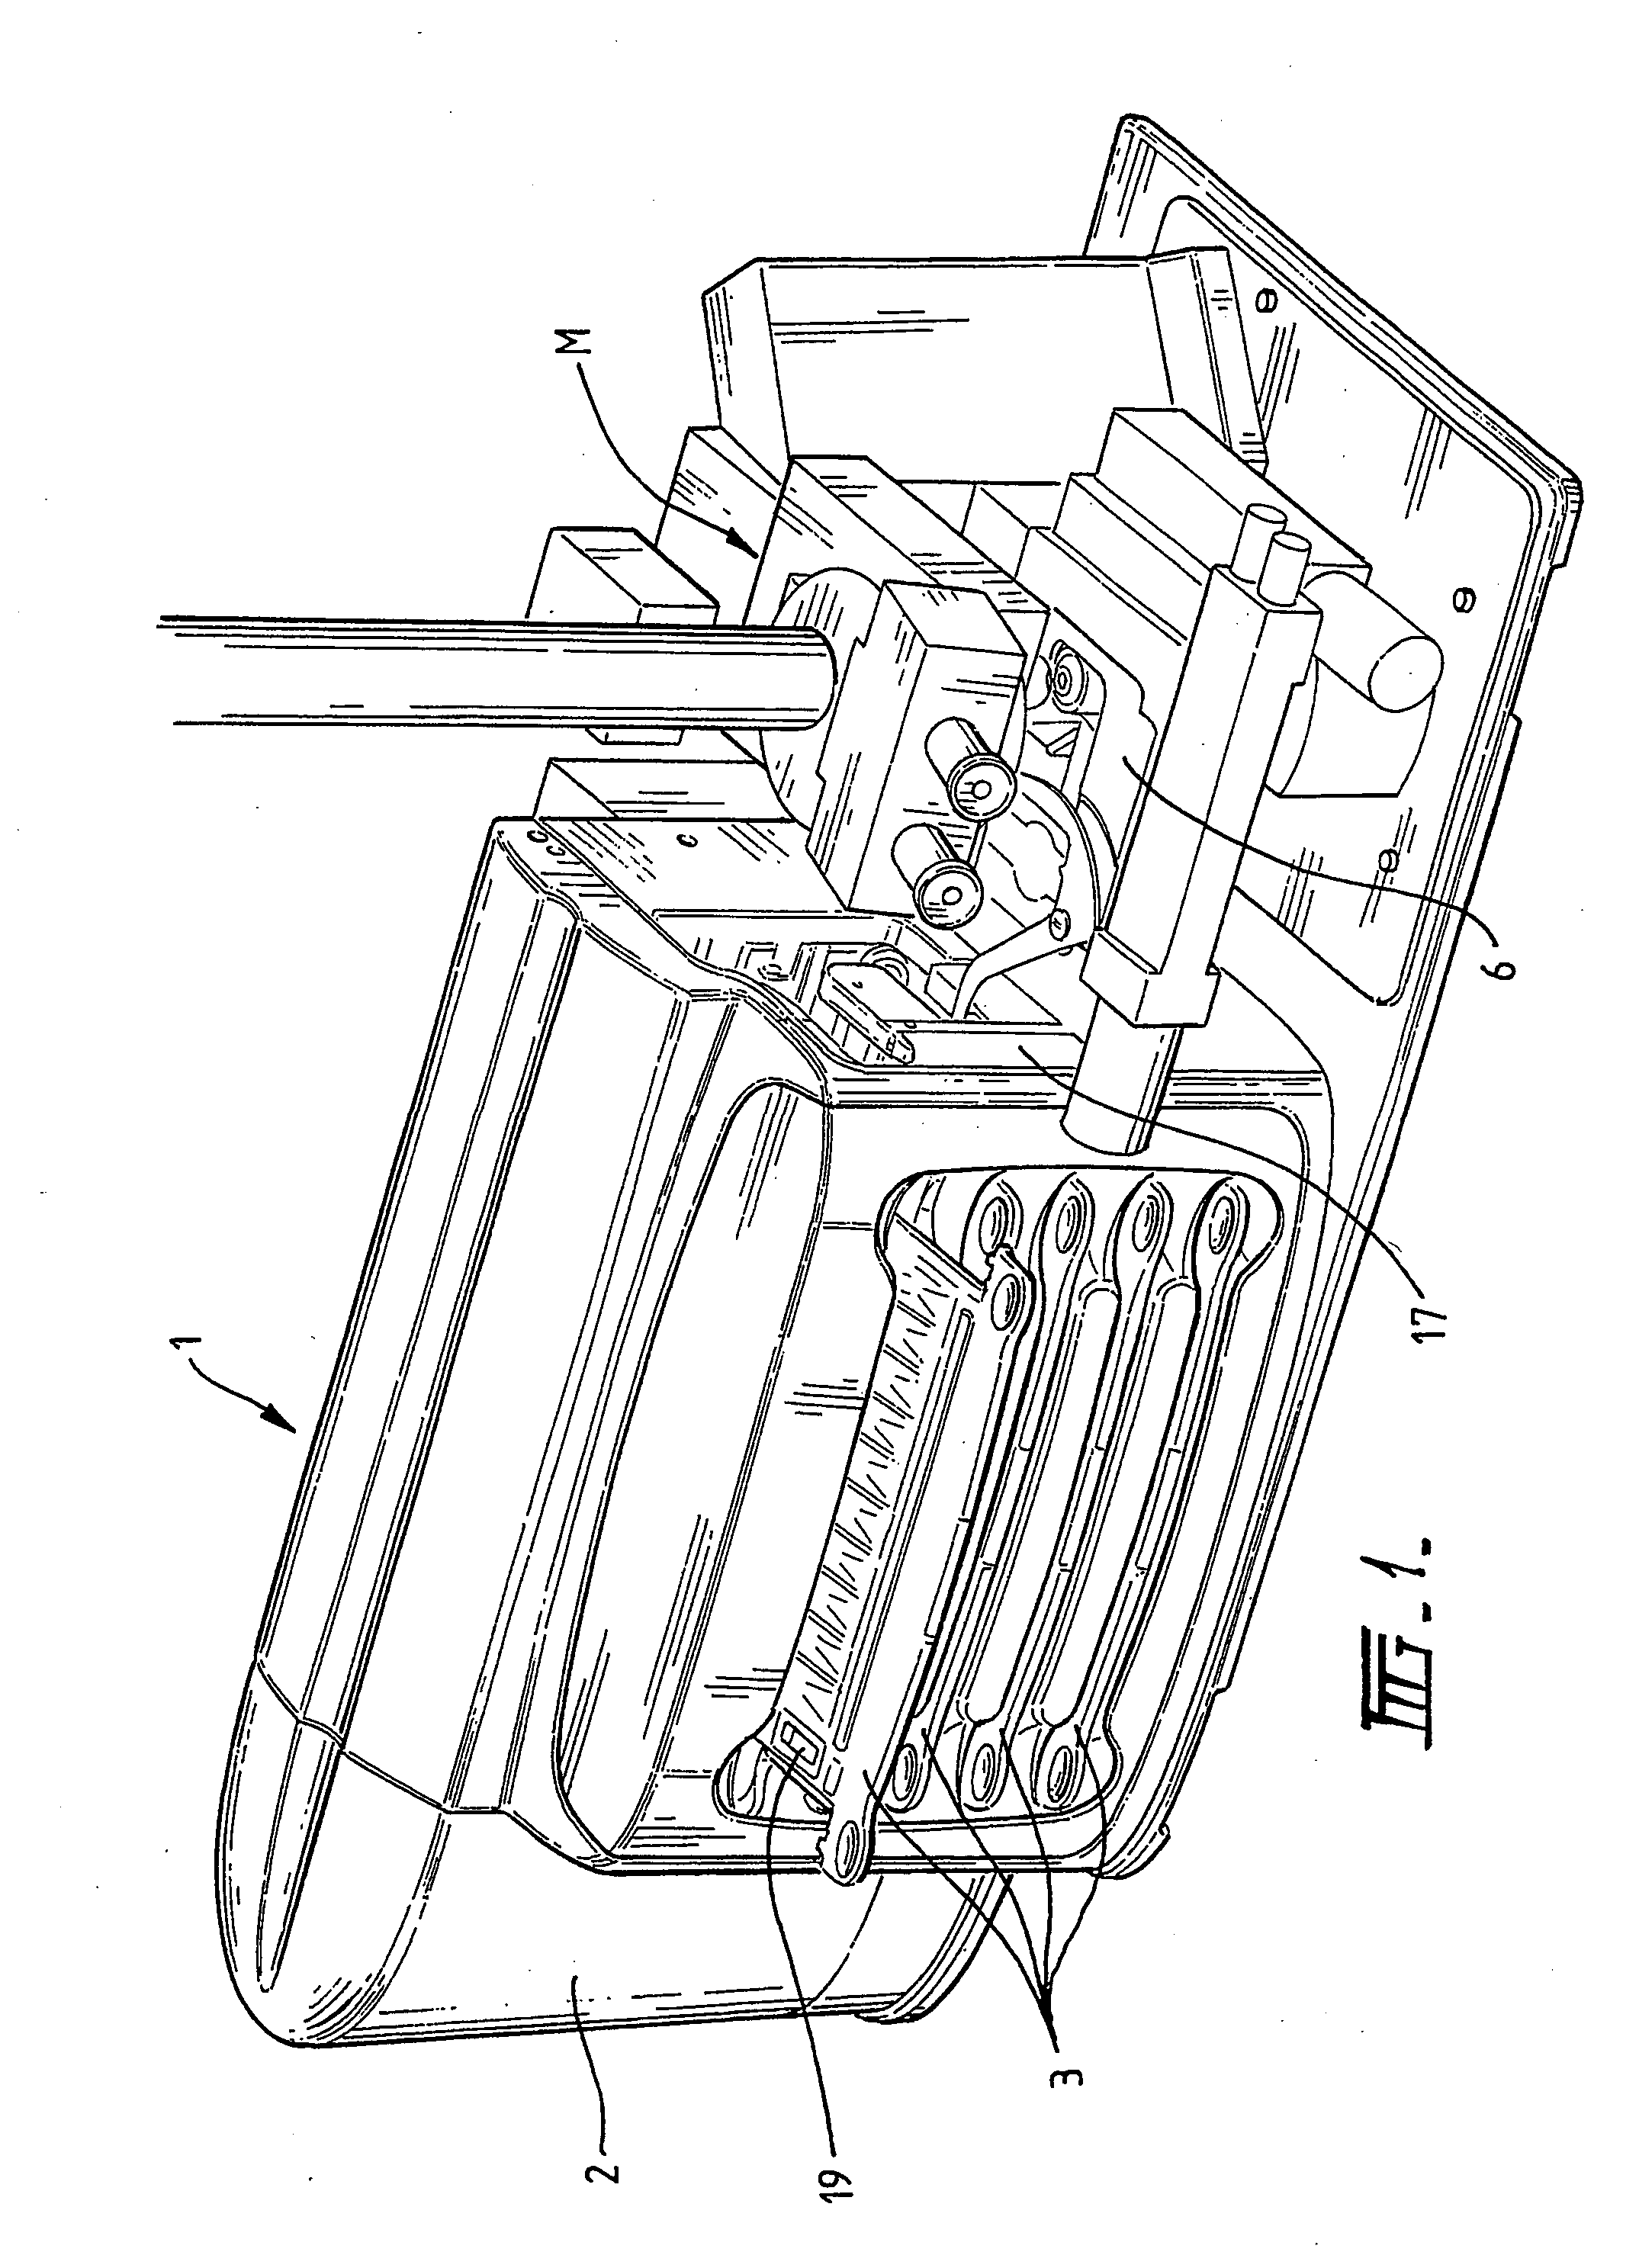 Slide holder for an automated slide loader